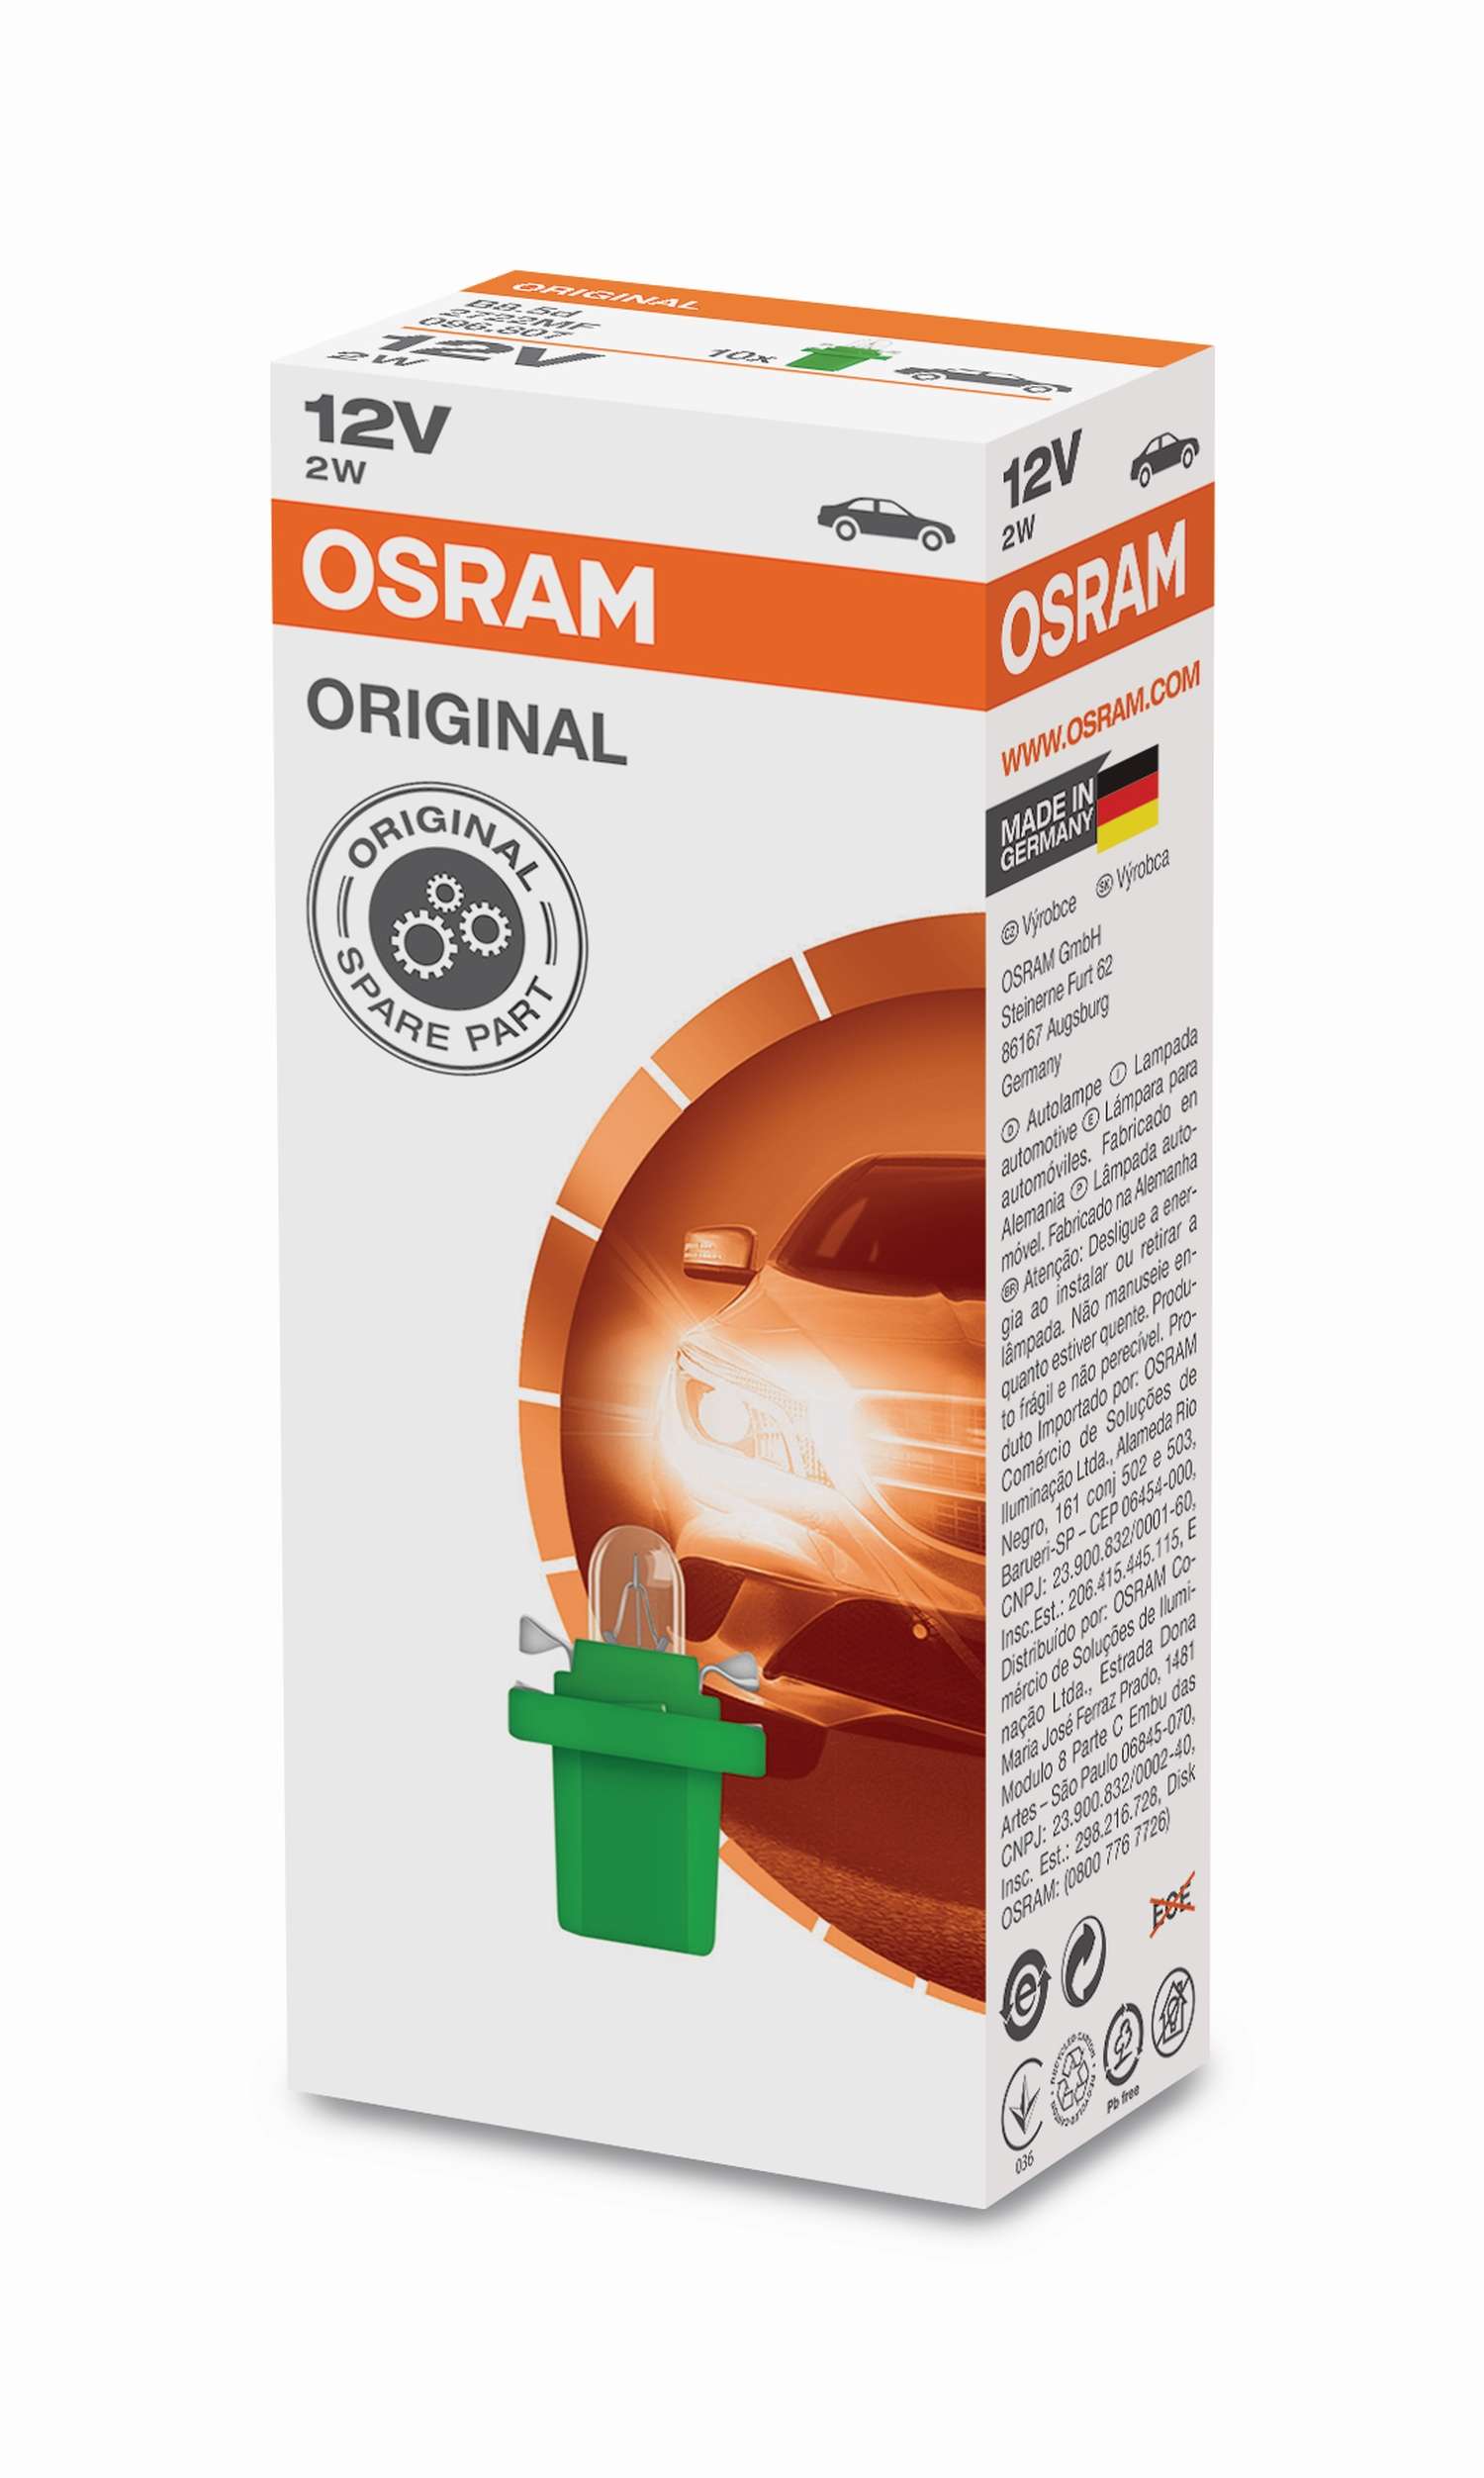 2W Kunststoffsockel Faltschachtel 12V Original OSRAM